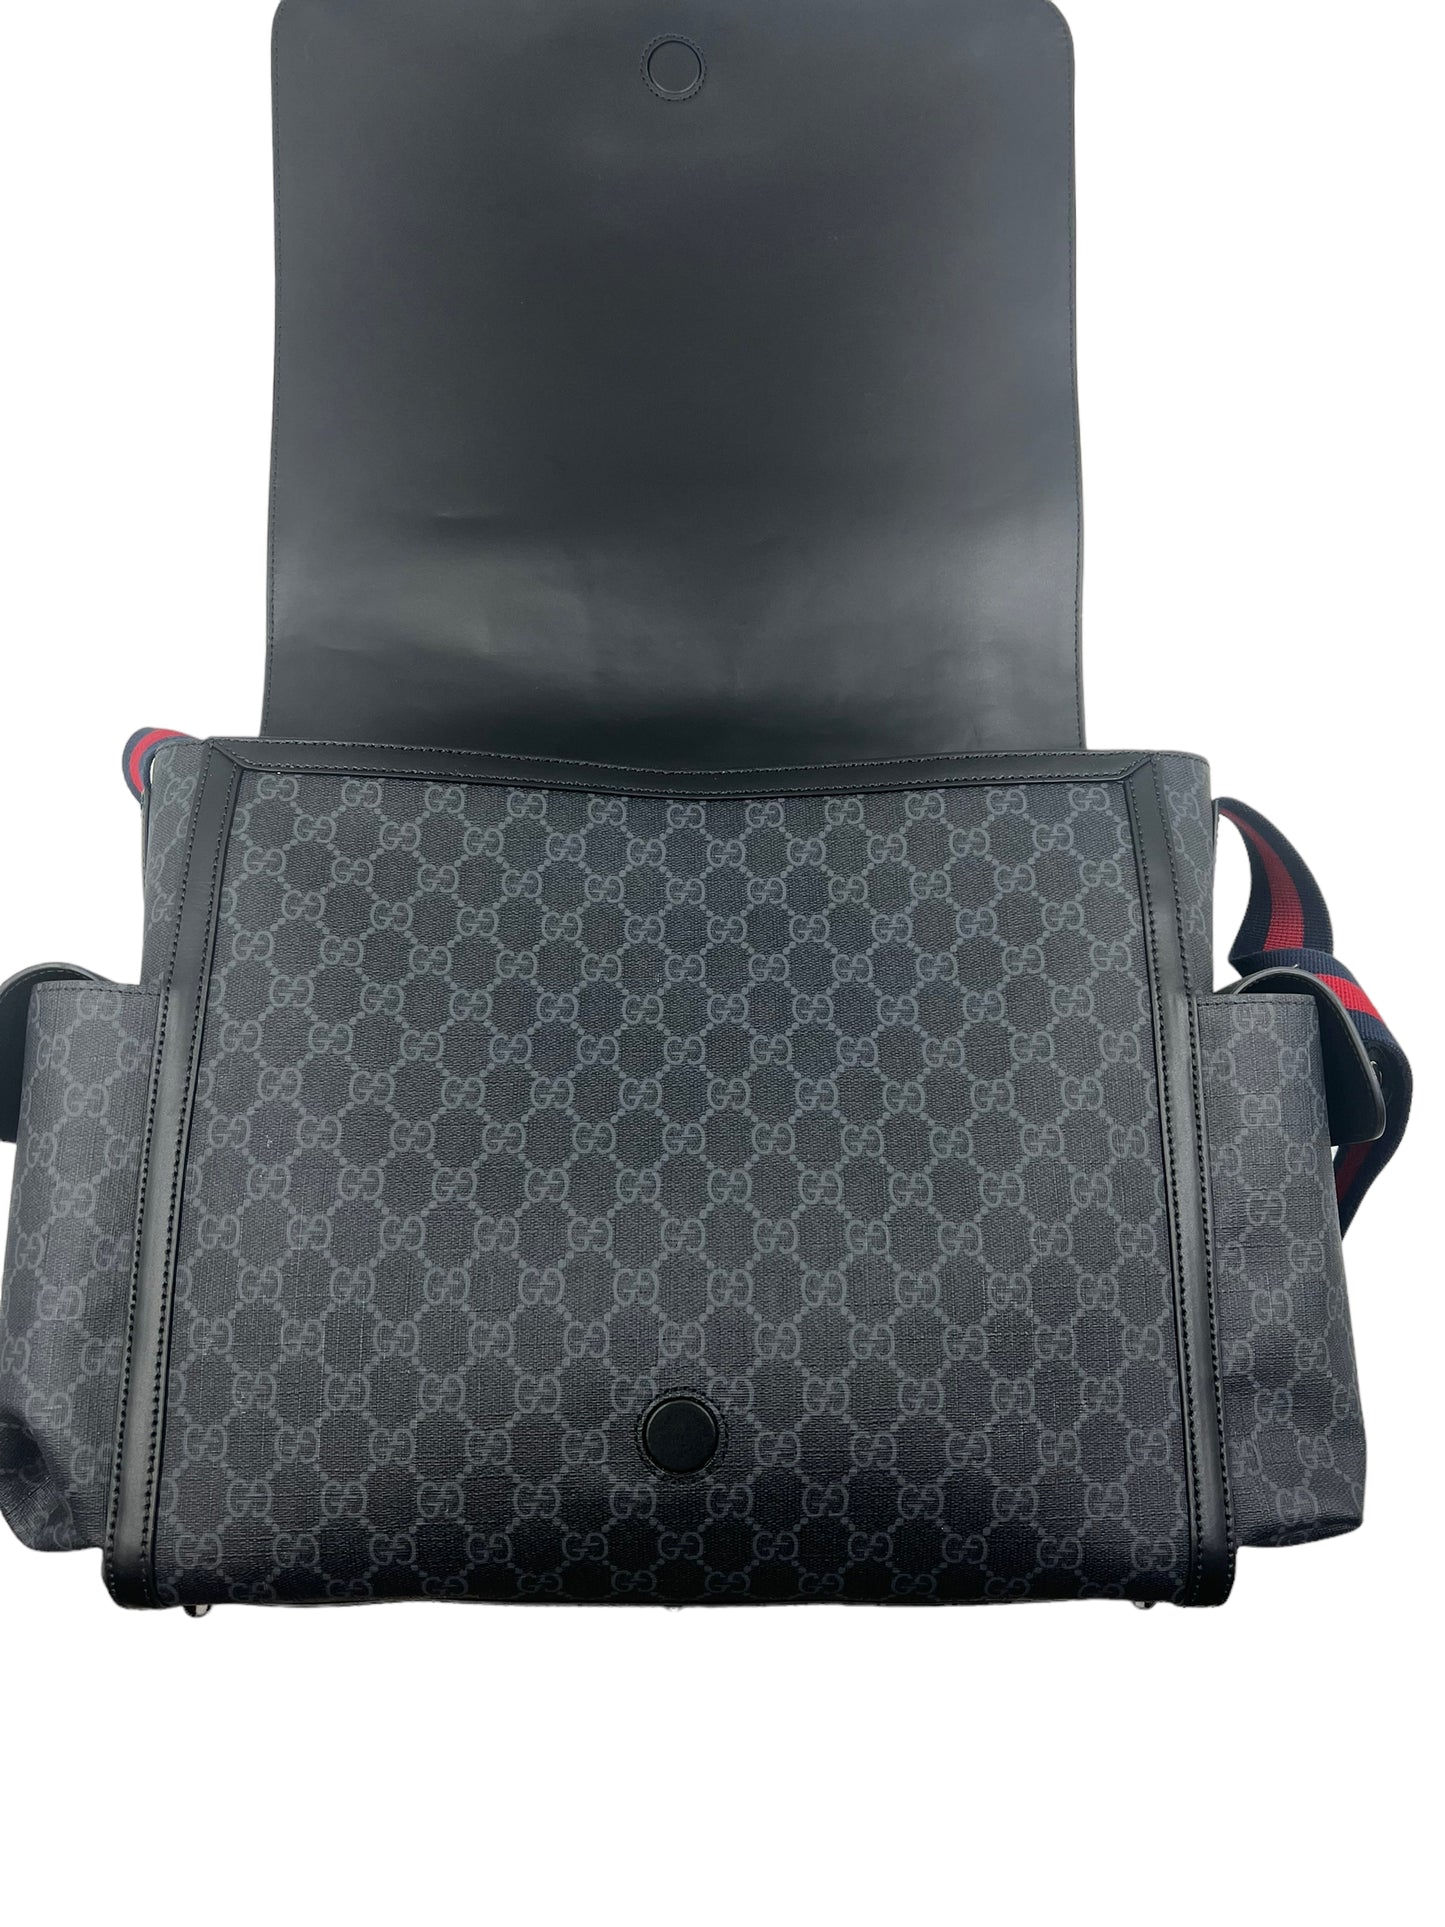 Gucci Black GG Supreme Diaper Bag